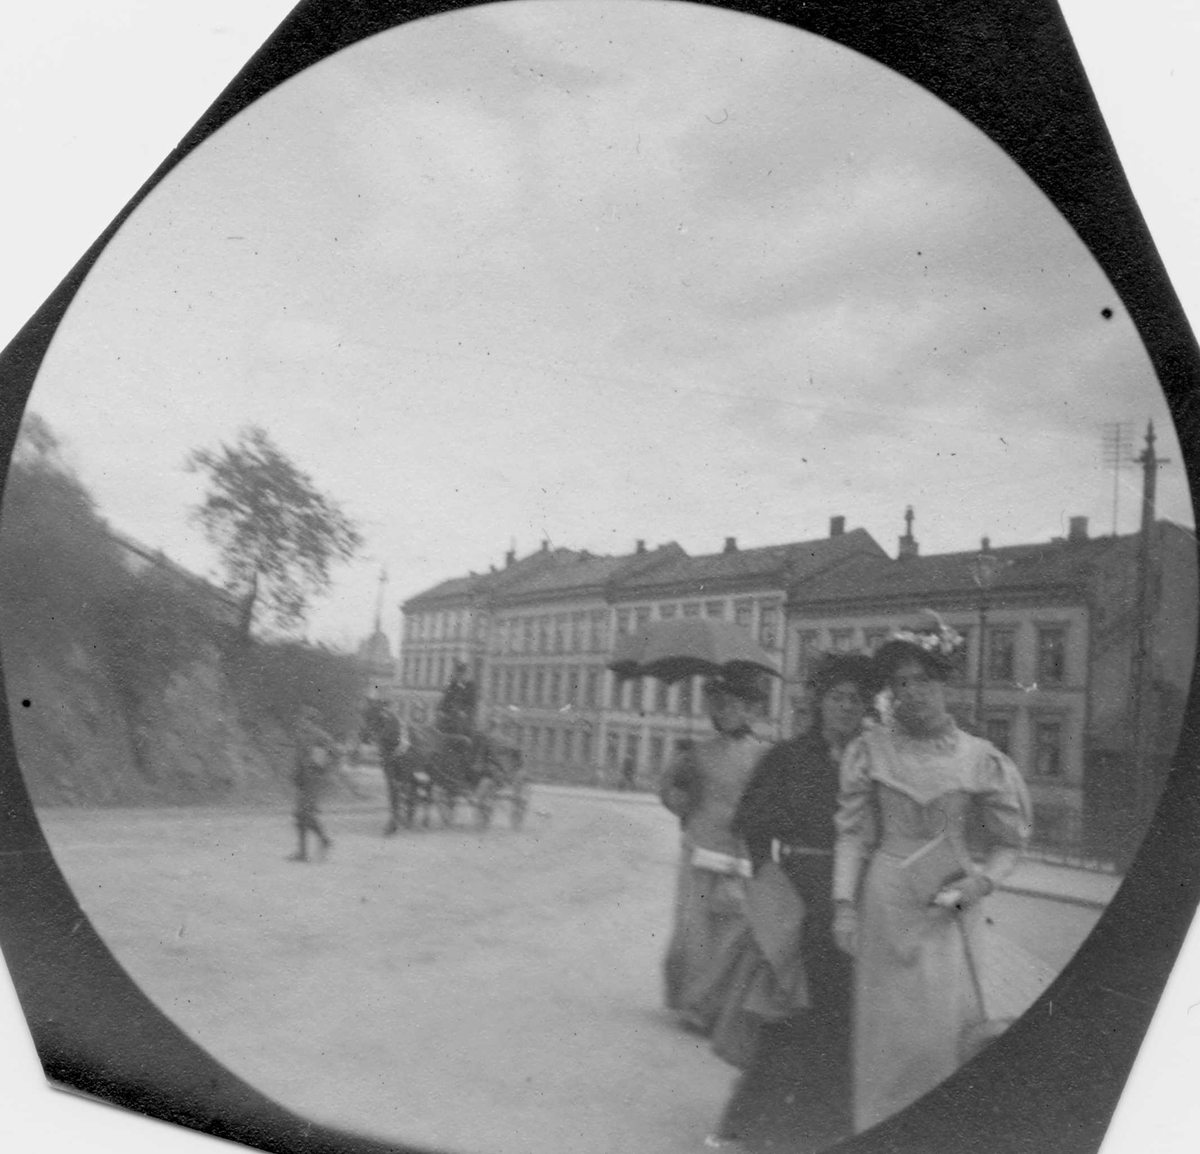 Tre kvinner spaserer i bygate, Oslo. Hestekjøretøy i gata og bygårder i bakgrunnen.